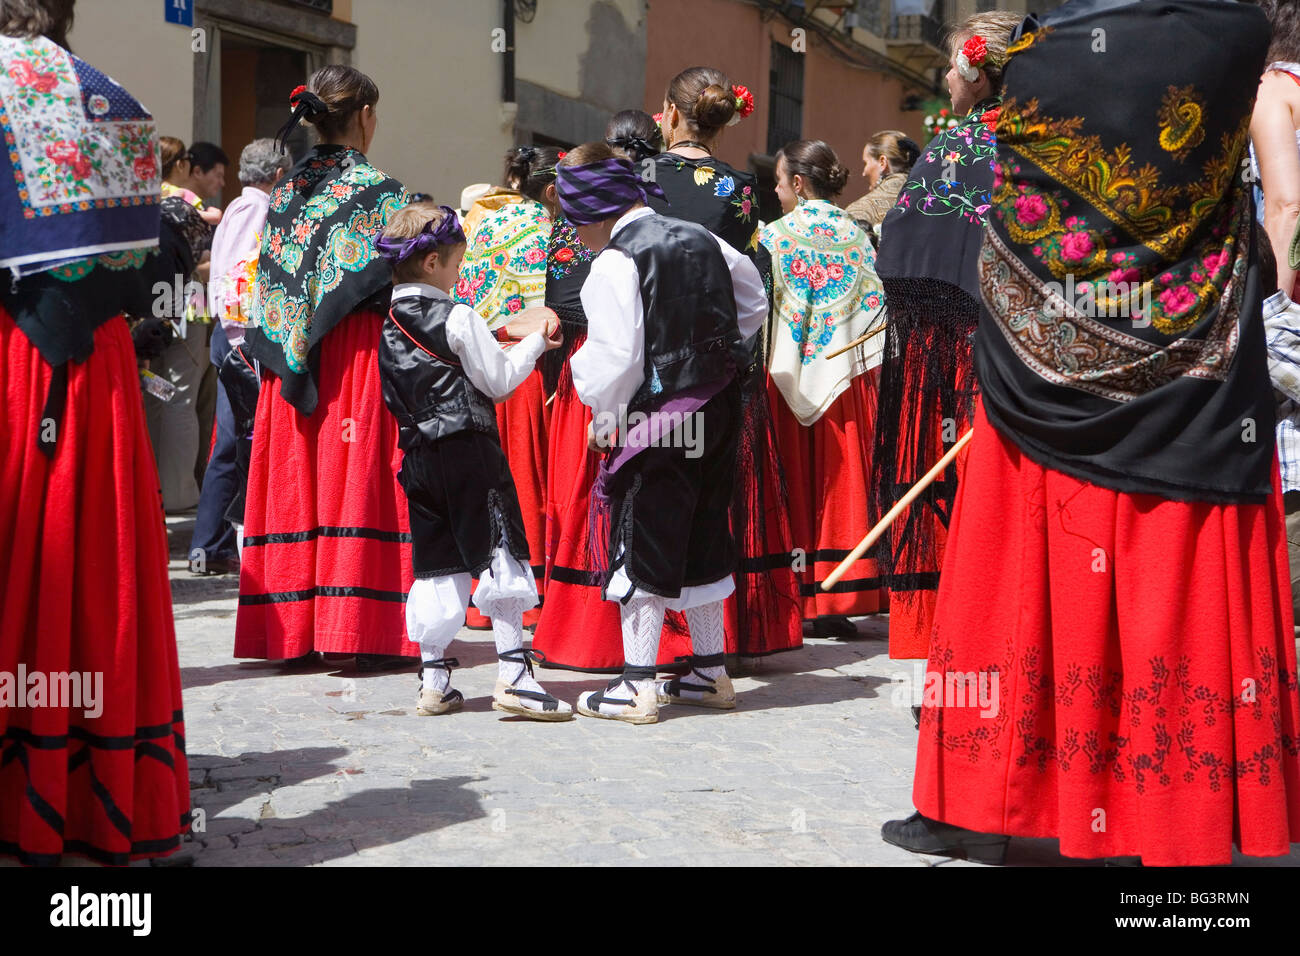 Célébrations de premier vendredi de mai, Jaca, Aragon, Espagne, Europe Banque D'Images